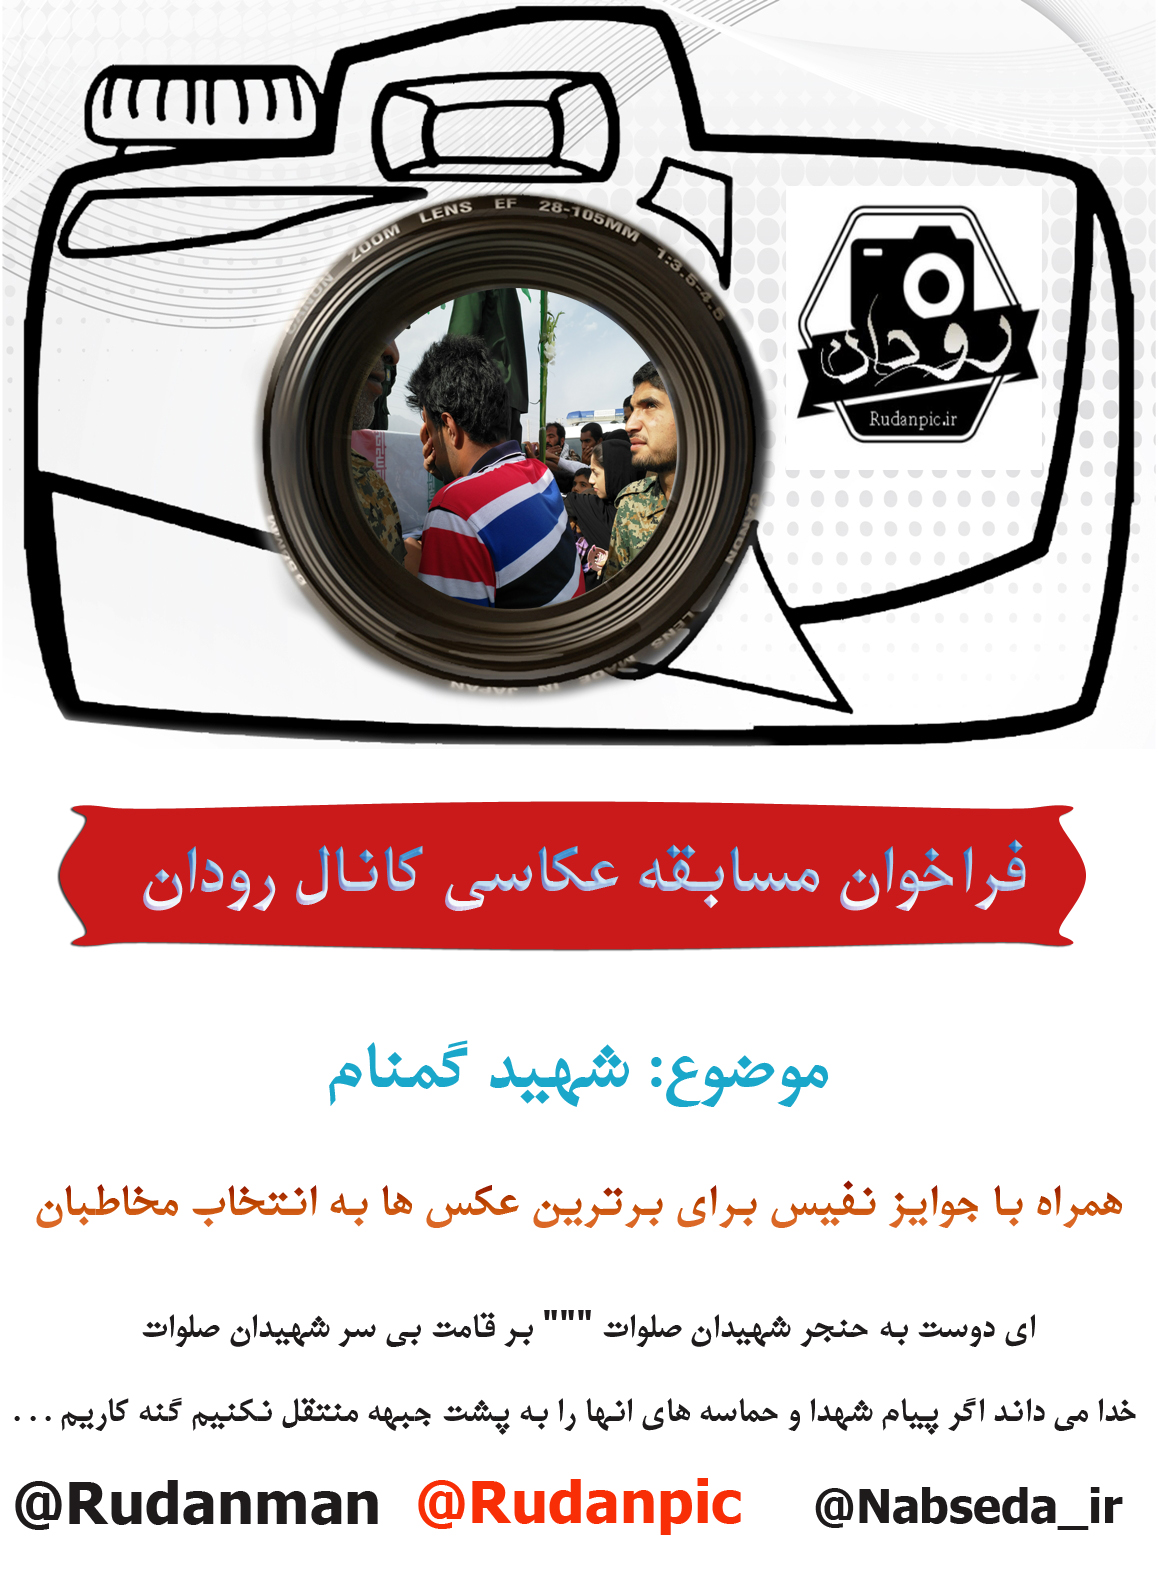 فراخوان مسابقه بزرگ عکاسی کانال رودان با موضوع شهید گمنام